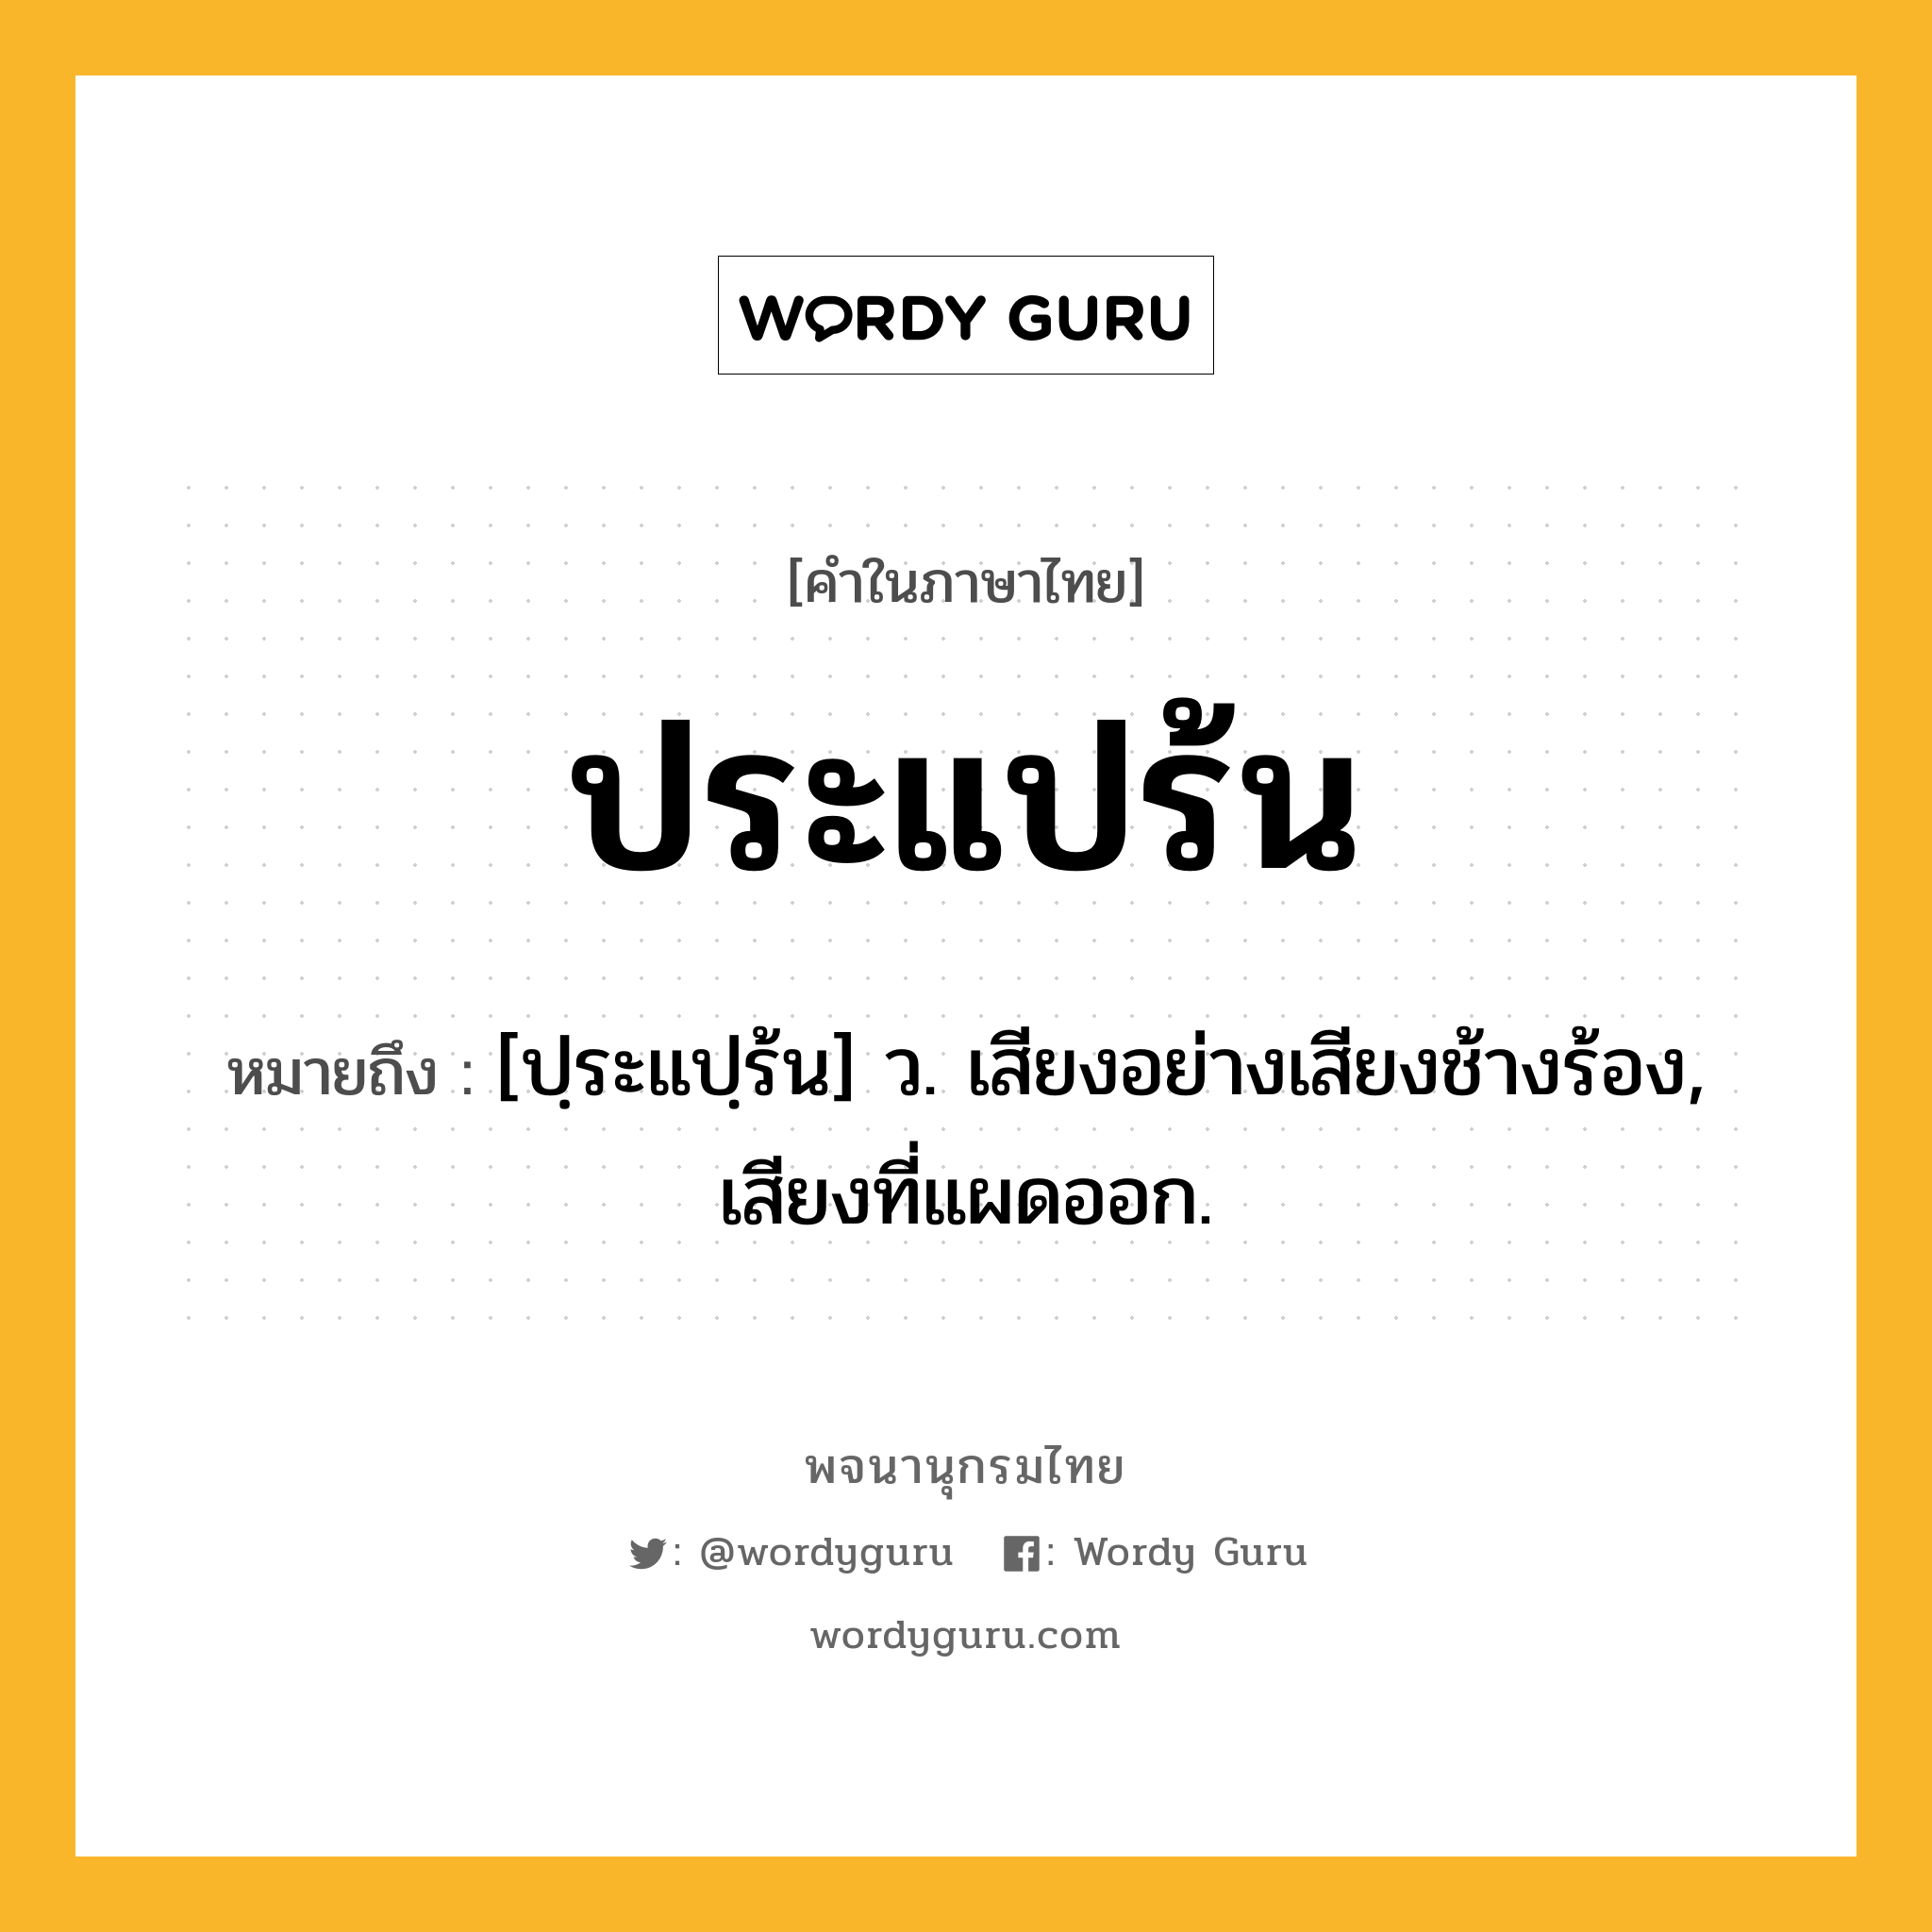 ประแปร้น ความหมาย หมายถึงอะไร?, คำในภาษาไทย ประแปร้น หมายถึง [ปฺระแปฺร้น] ว. เสียงอย่างเสียงช้างร้อง, เสียงที่แผดออก.